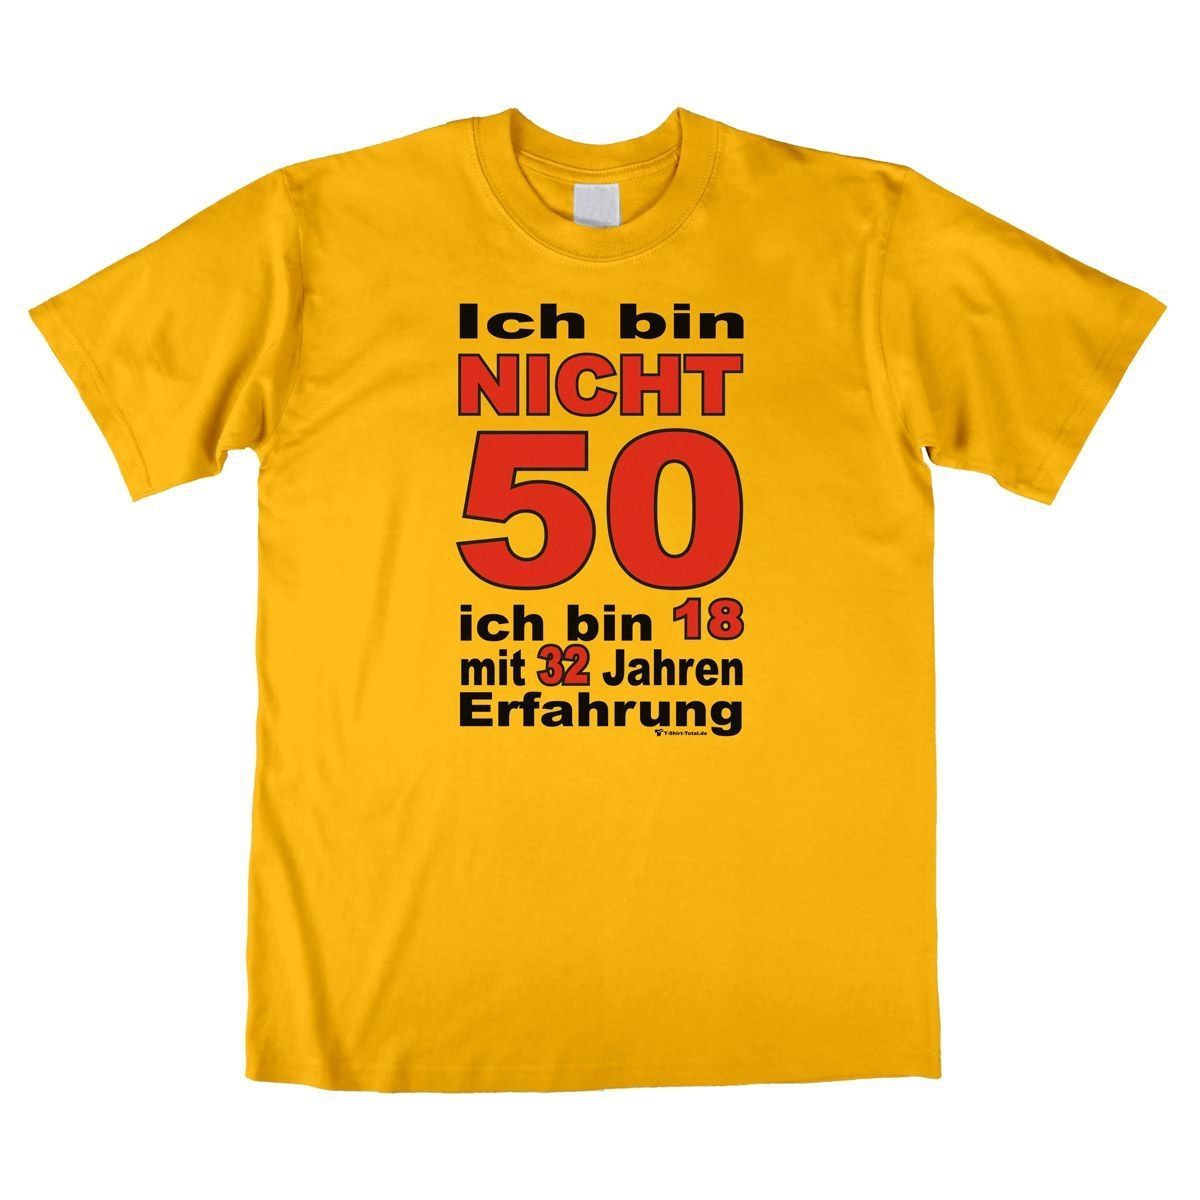 Bin nicht 50 Unisex T-Shirt gelb Large